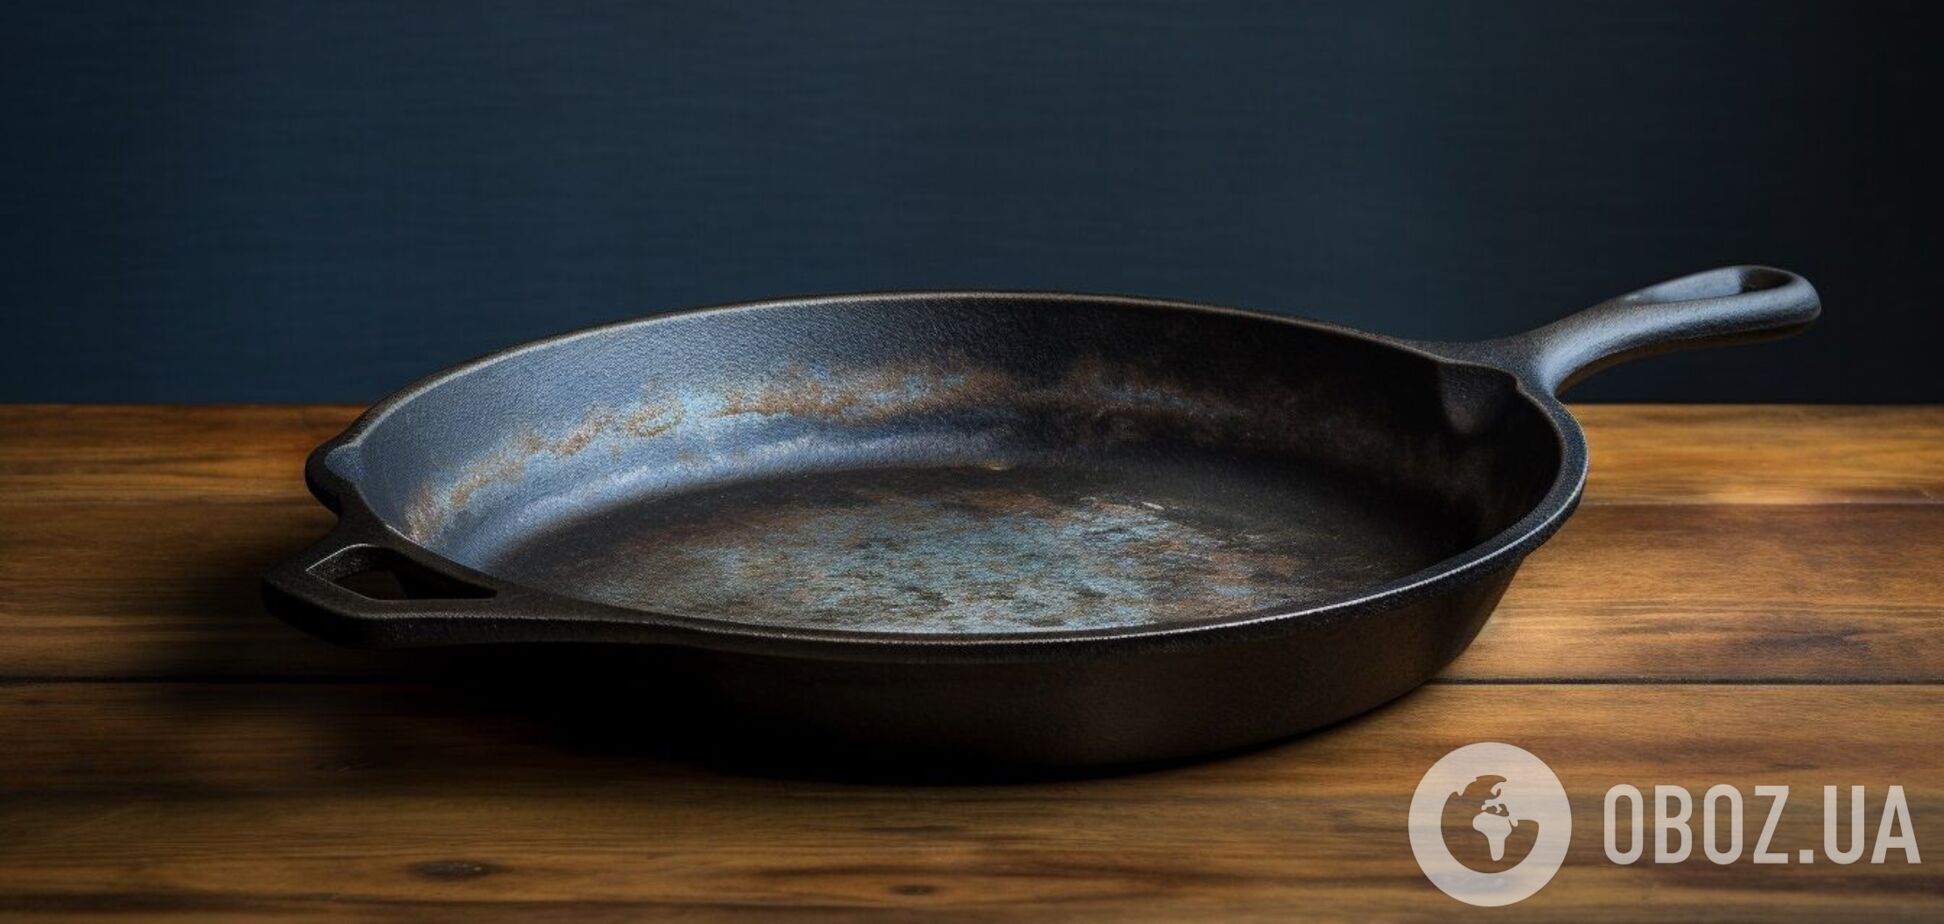 Как легко отмыть даже самую грязную чугунную сковороду: все необходимое уже есть под рукой